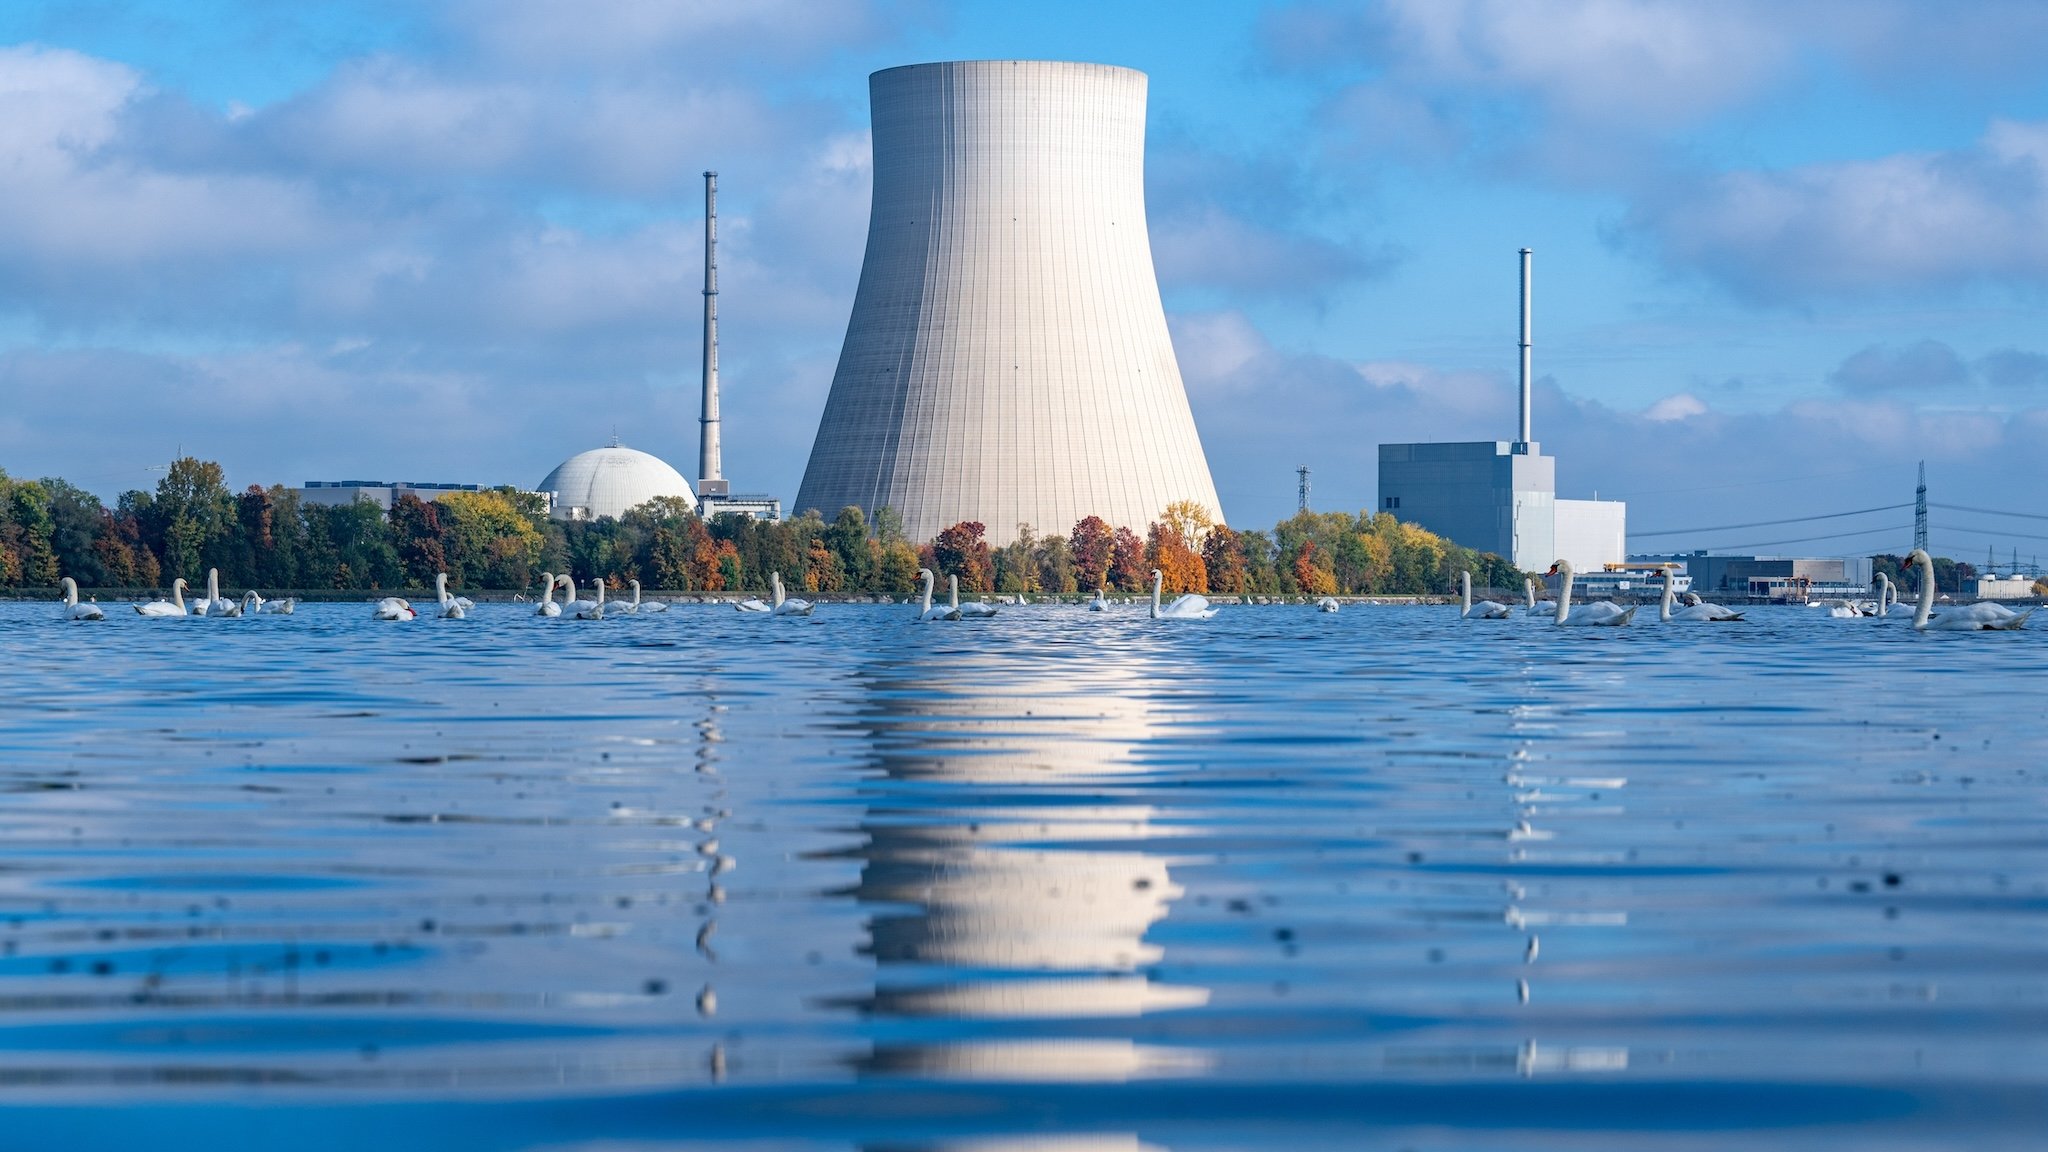 Das Kernkraftwerk Isar 2